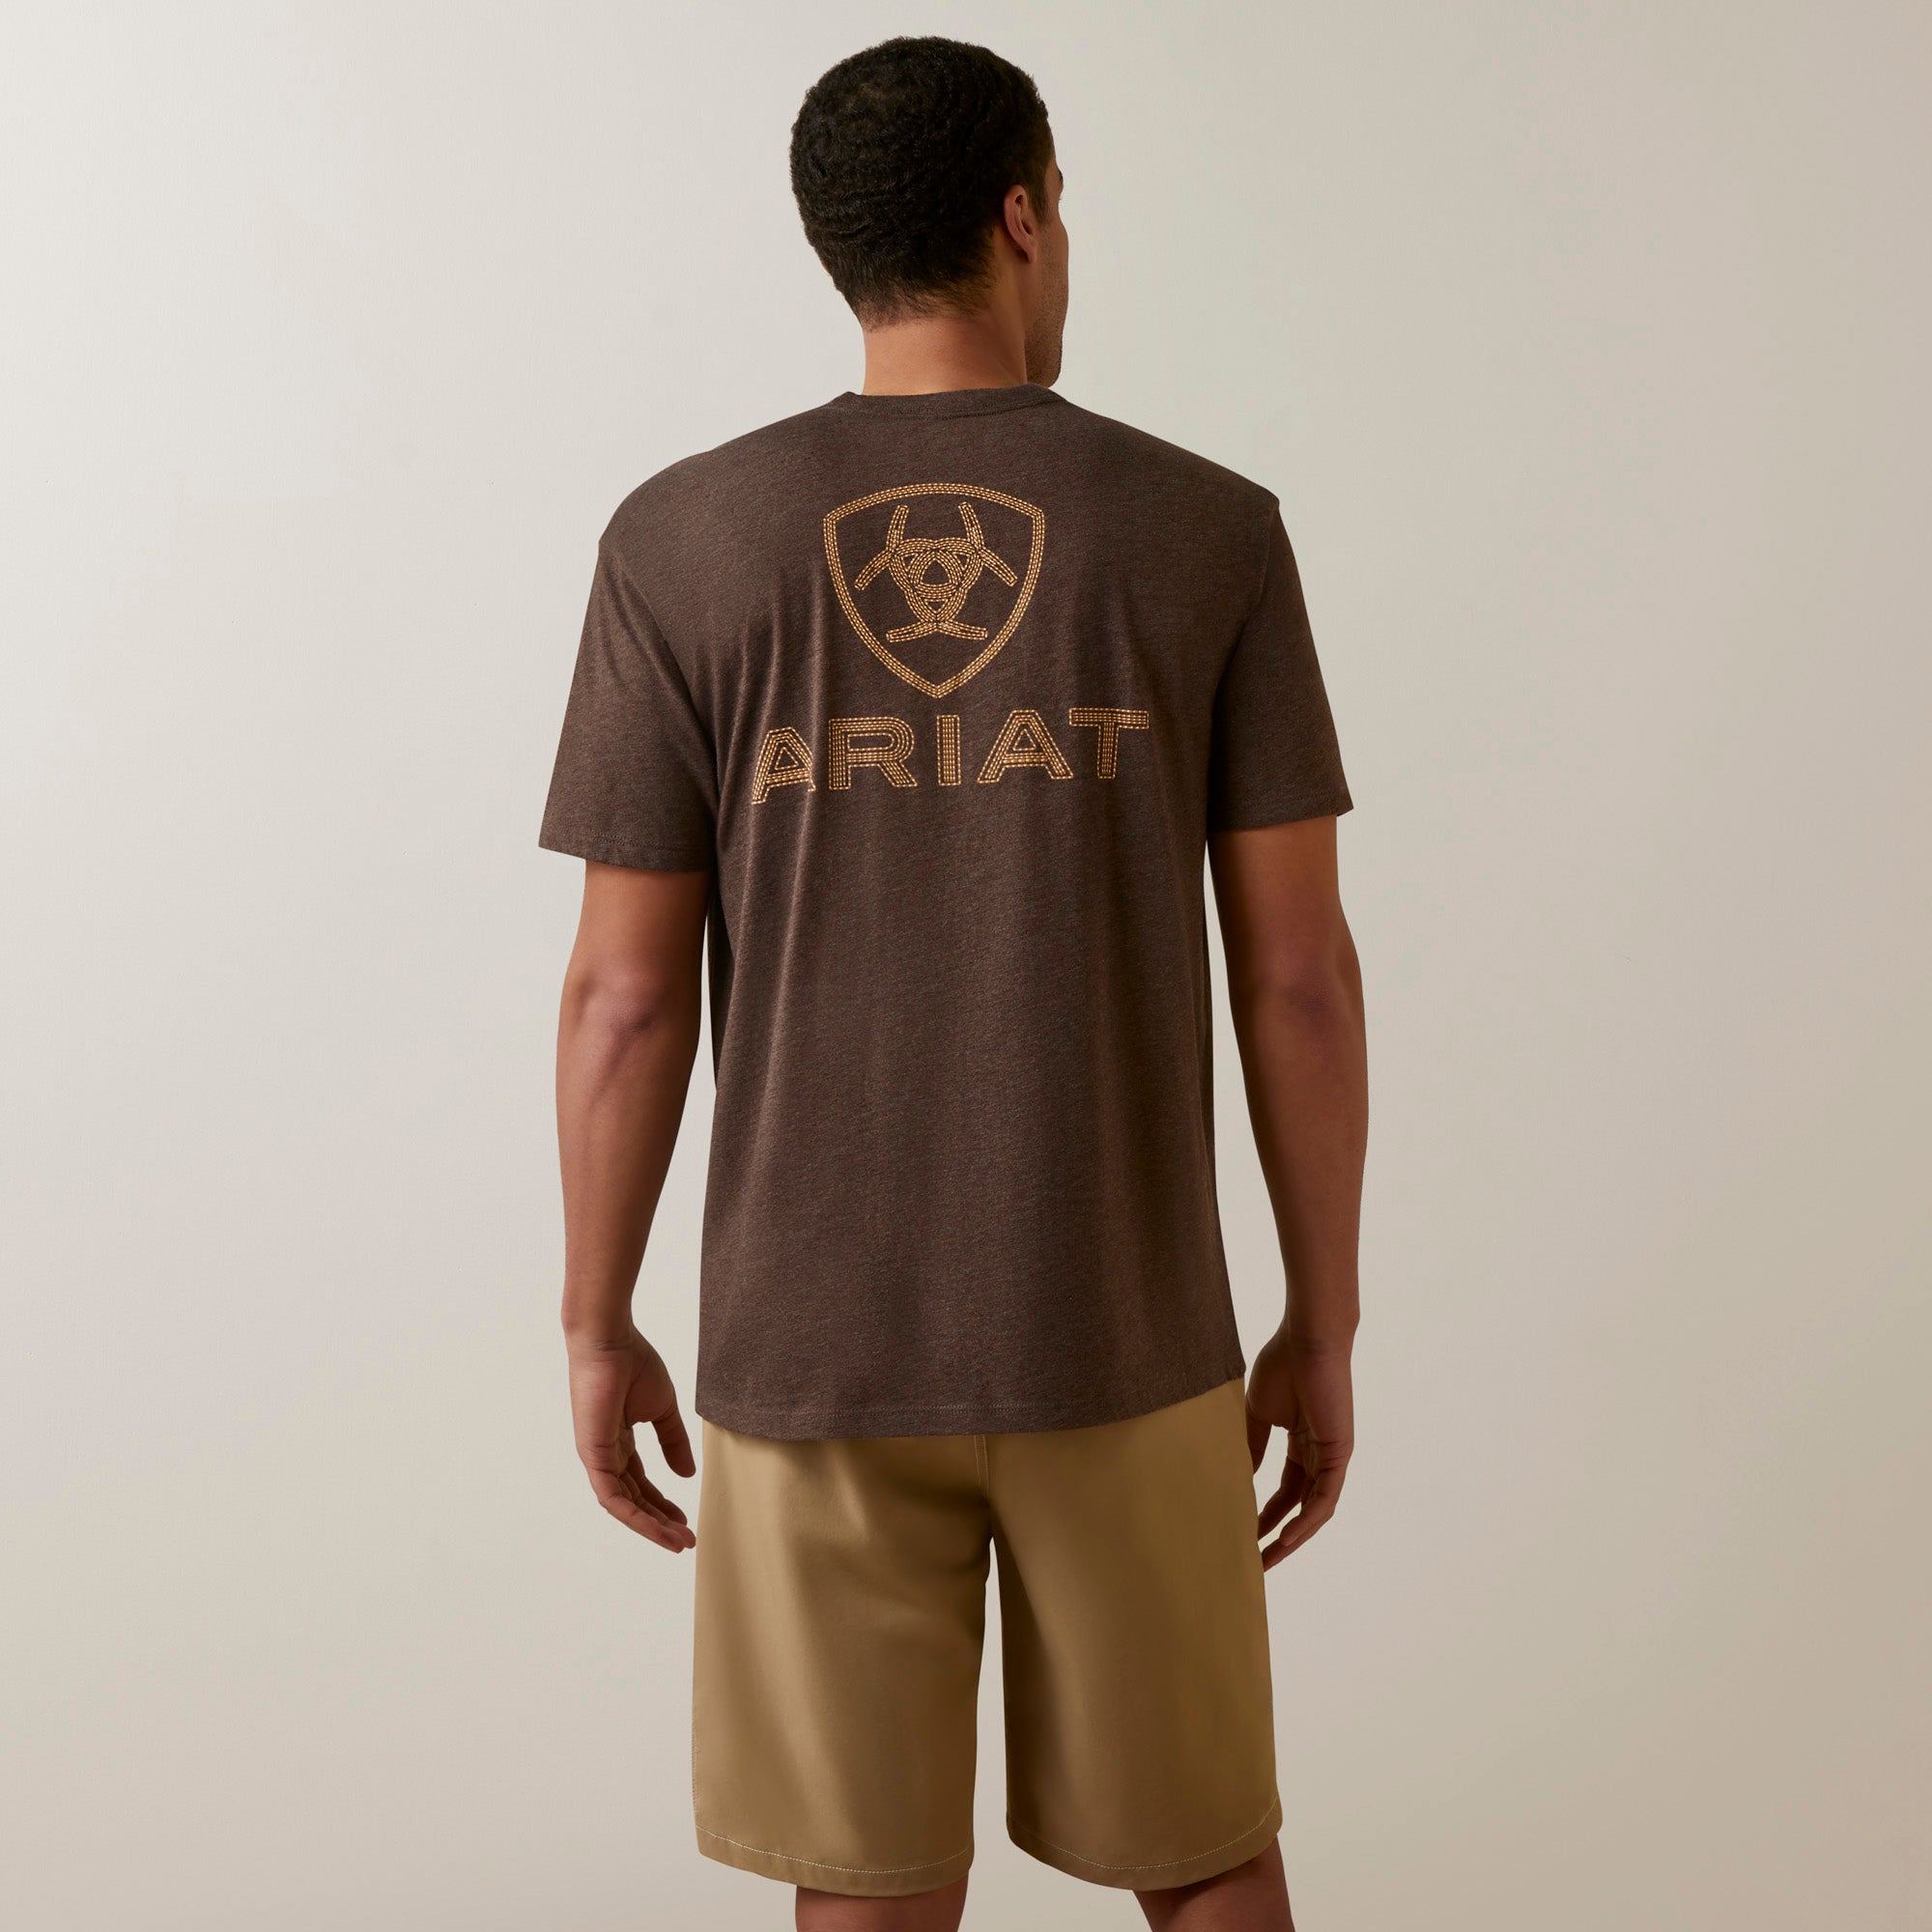 Ariat Men's Shield Stitch T-Shirt, Brown Heather